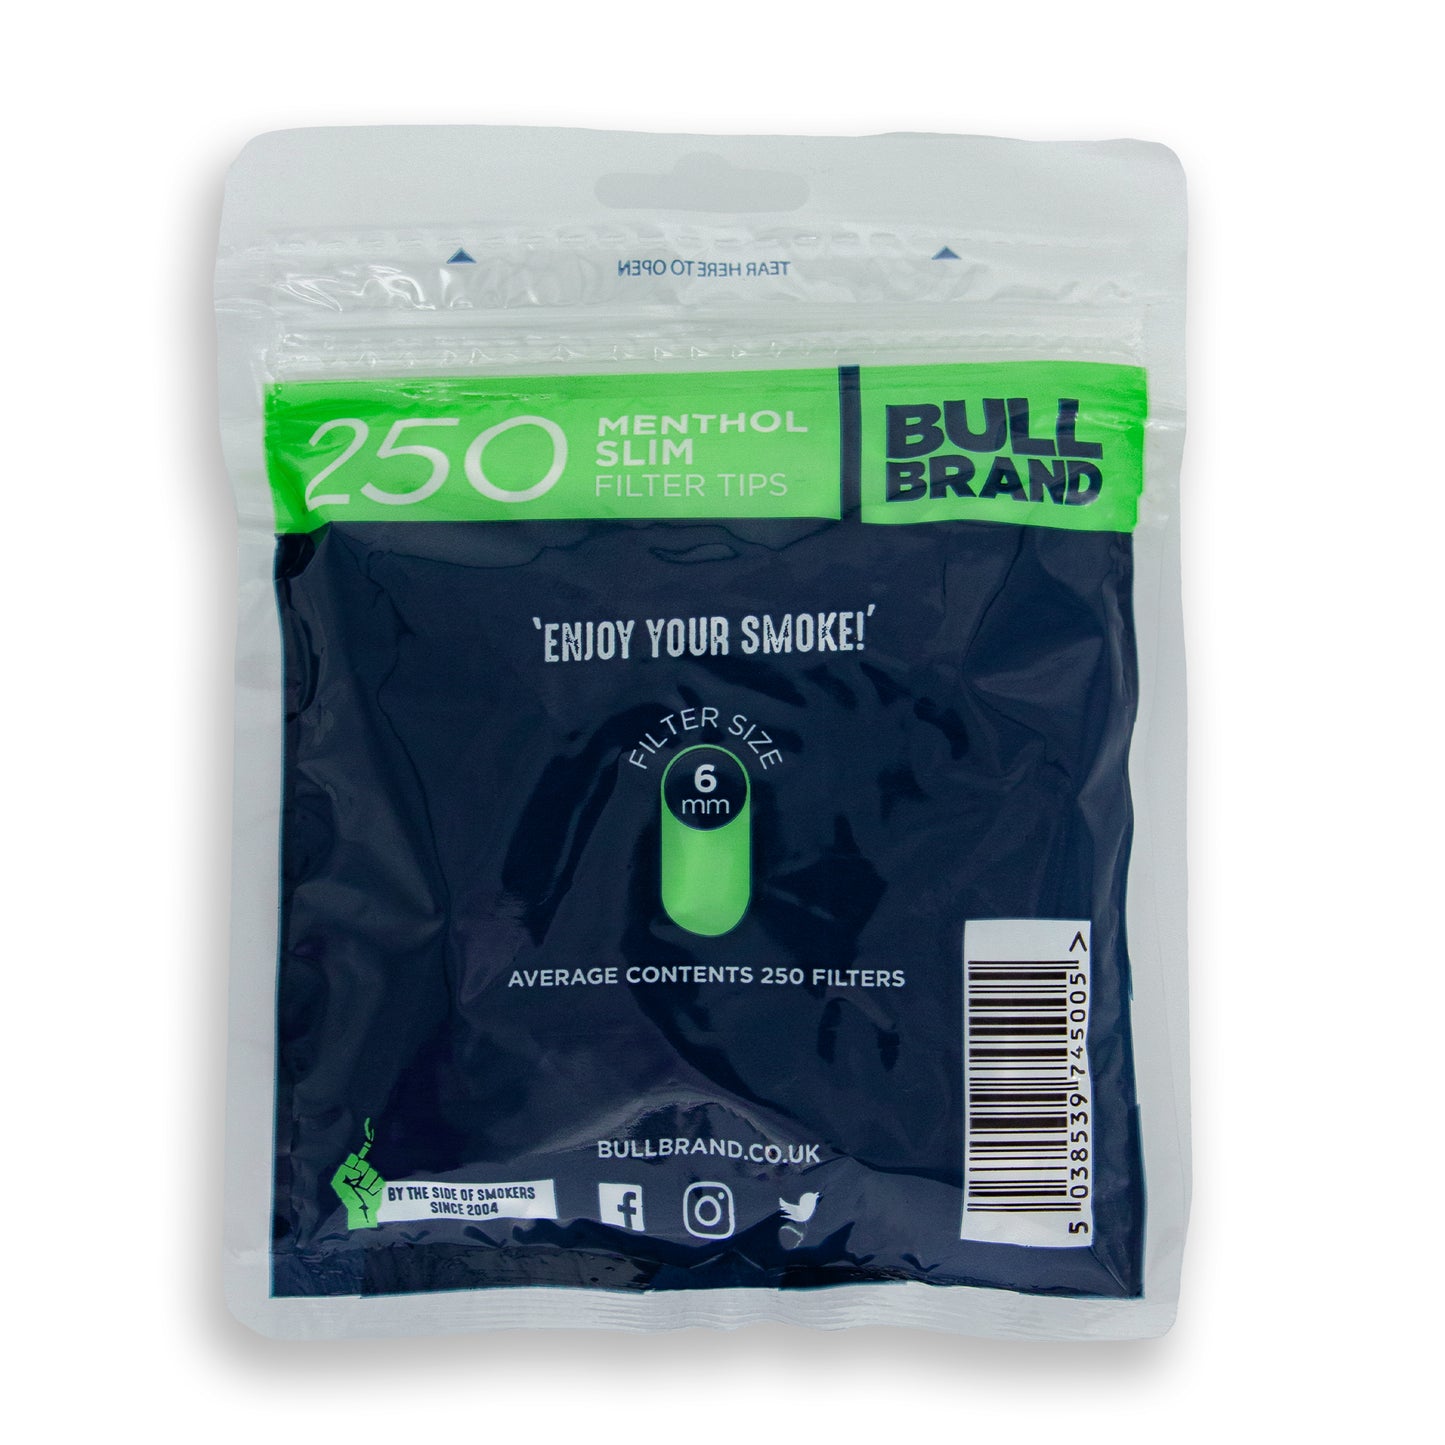 Bull Brand Menthol Slim Filter Tips Bags 250's